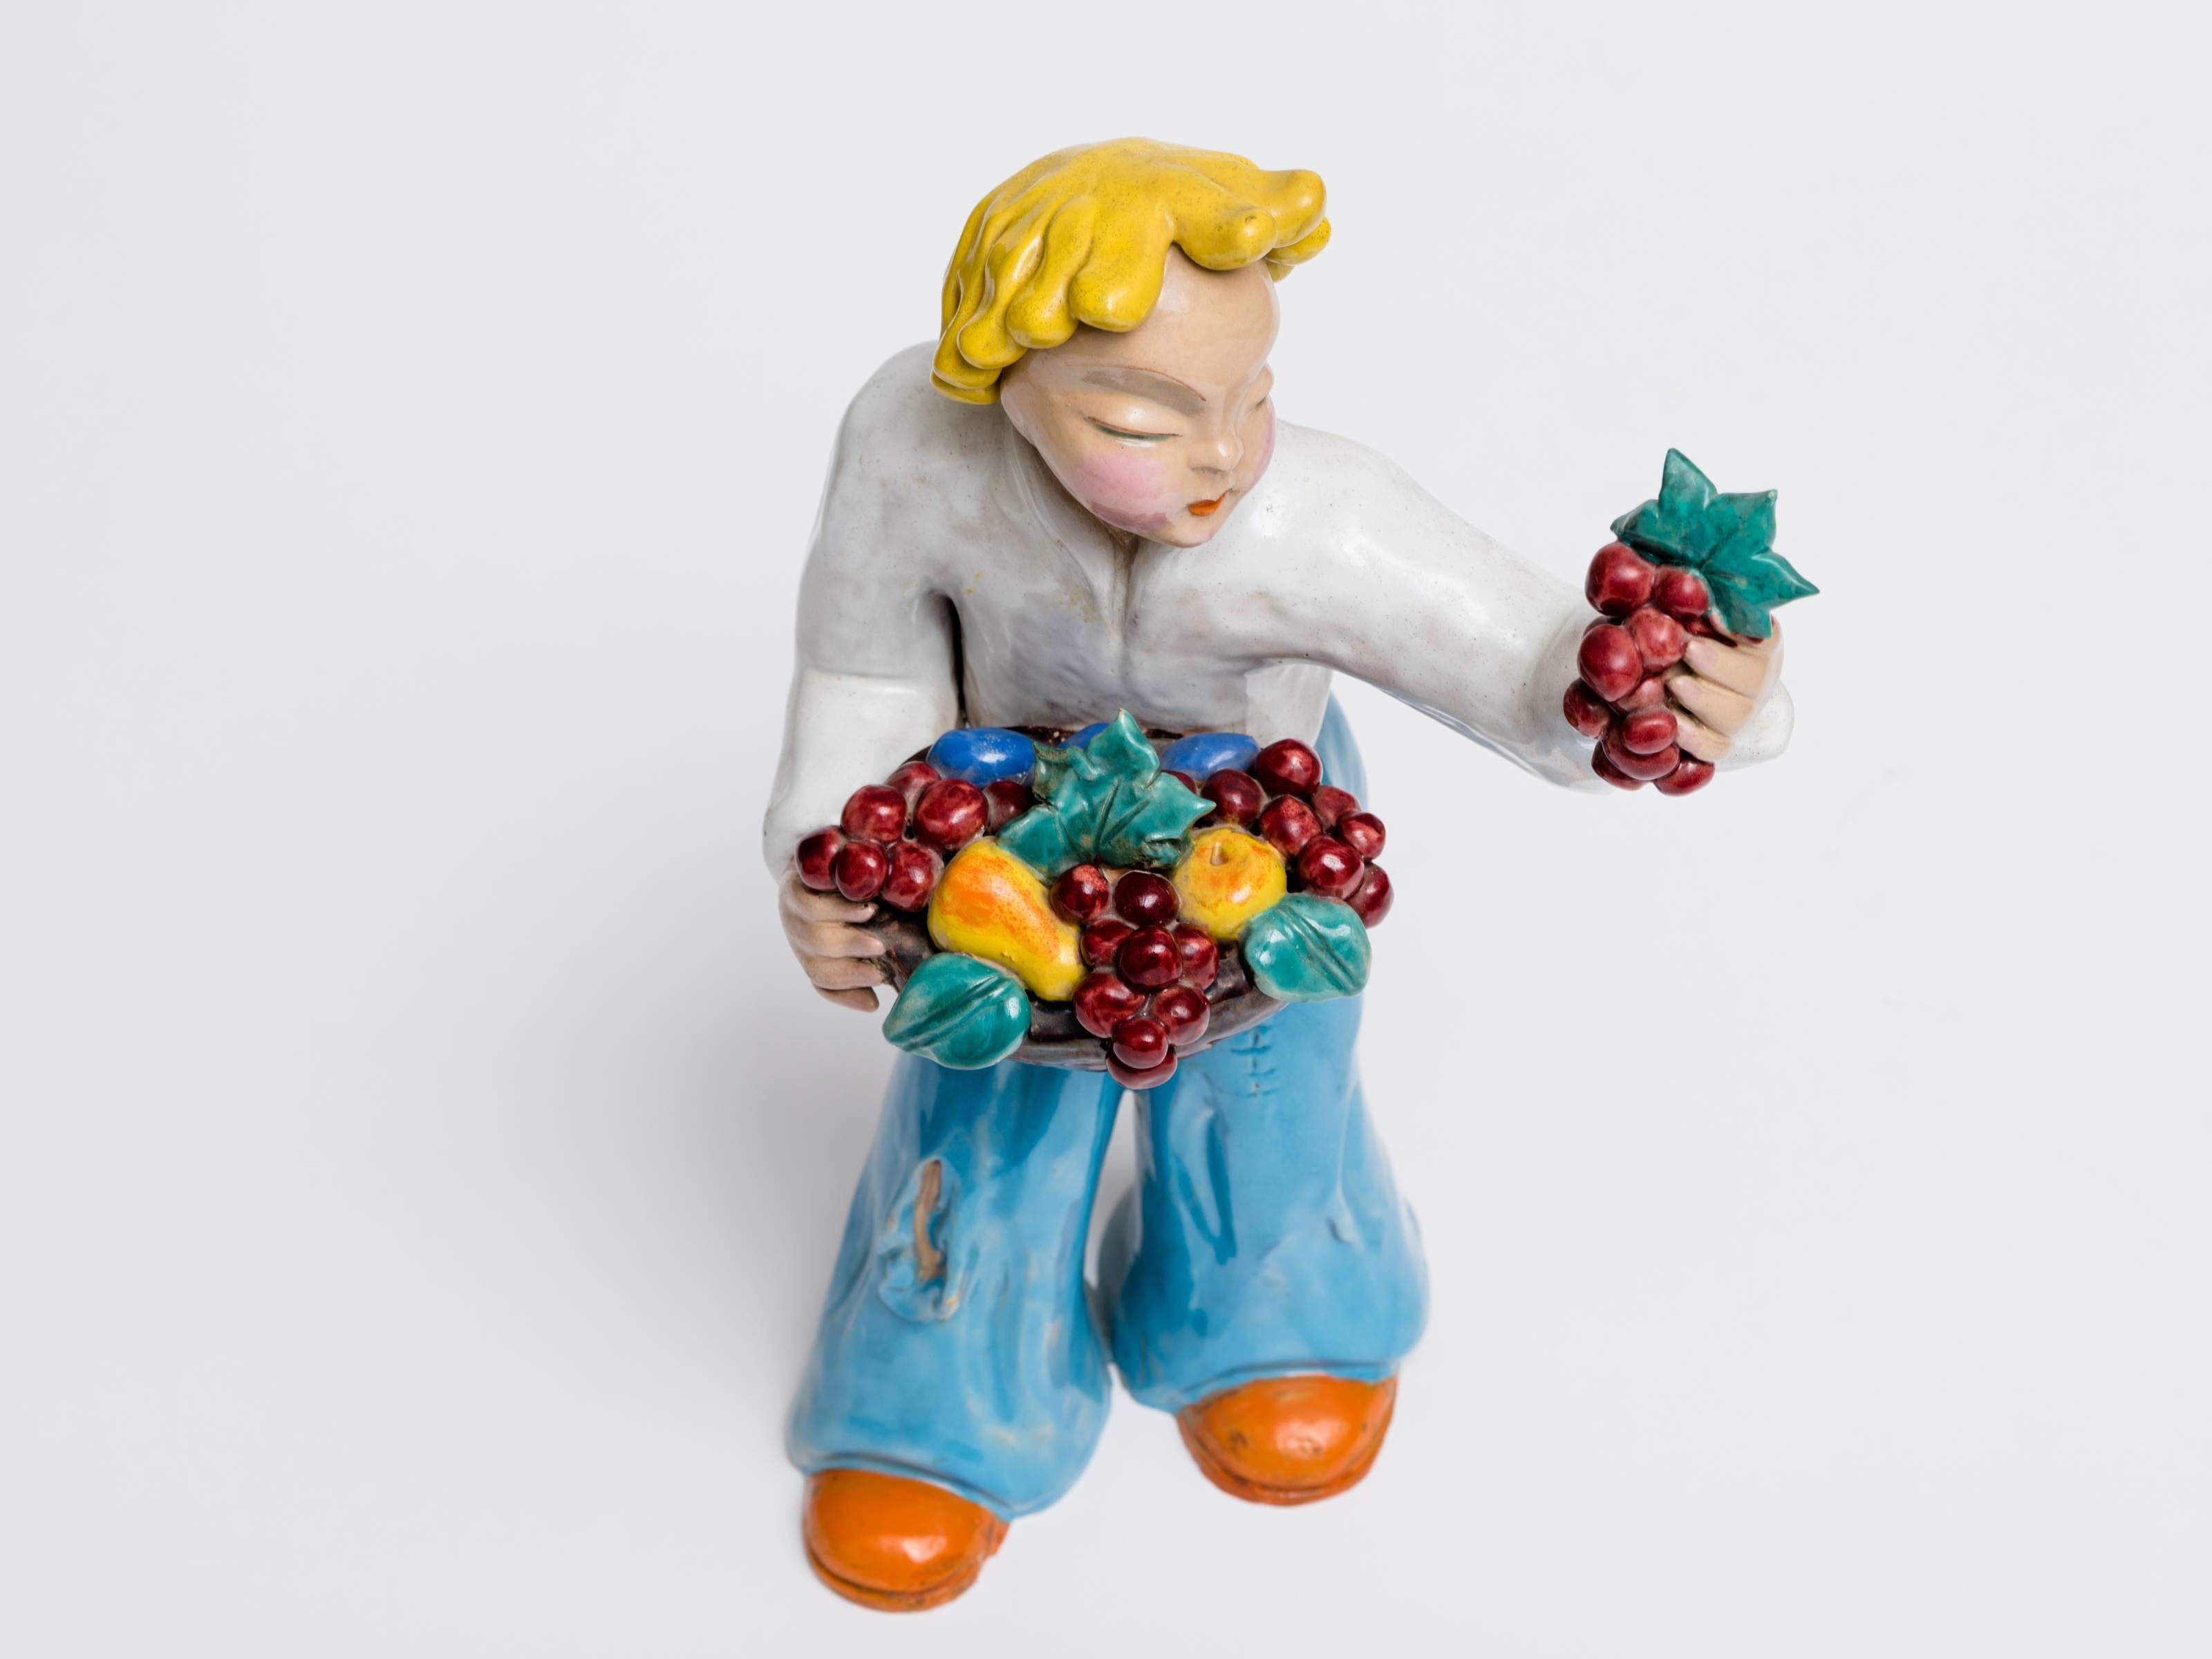 Fabelhafte und große Maria H. Rahmer (1911-1998) figurale Skulptur eines Jungen mit Obst um 1930 aus Ungarn. Großer keramischer Zustand mit Signatur H. Rahmer auf der Seite des Beins.  Eine tolle Keramikskulptur aus der Zeit!
